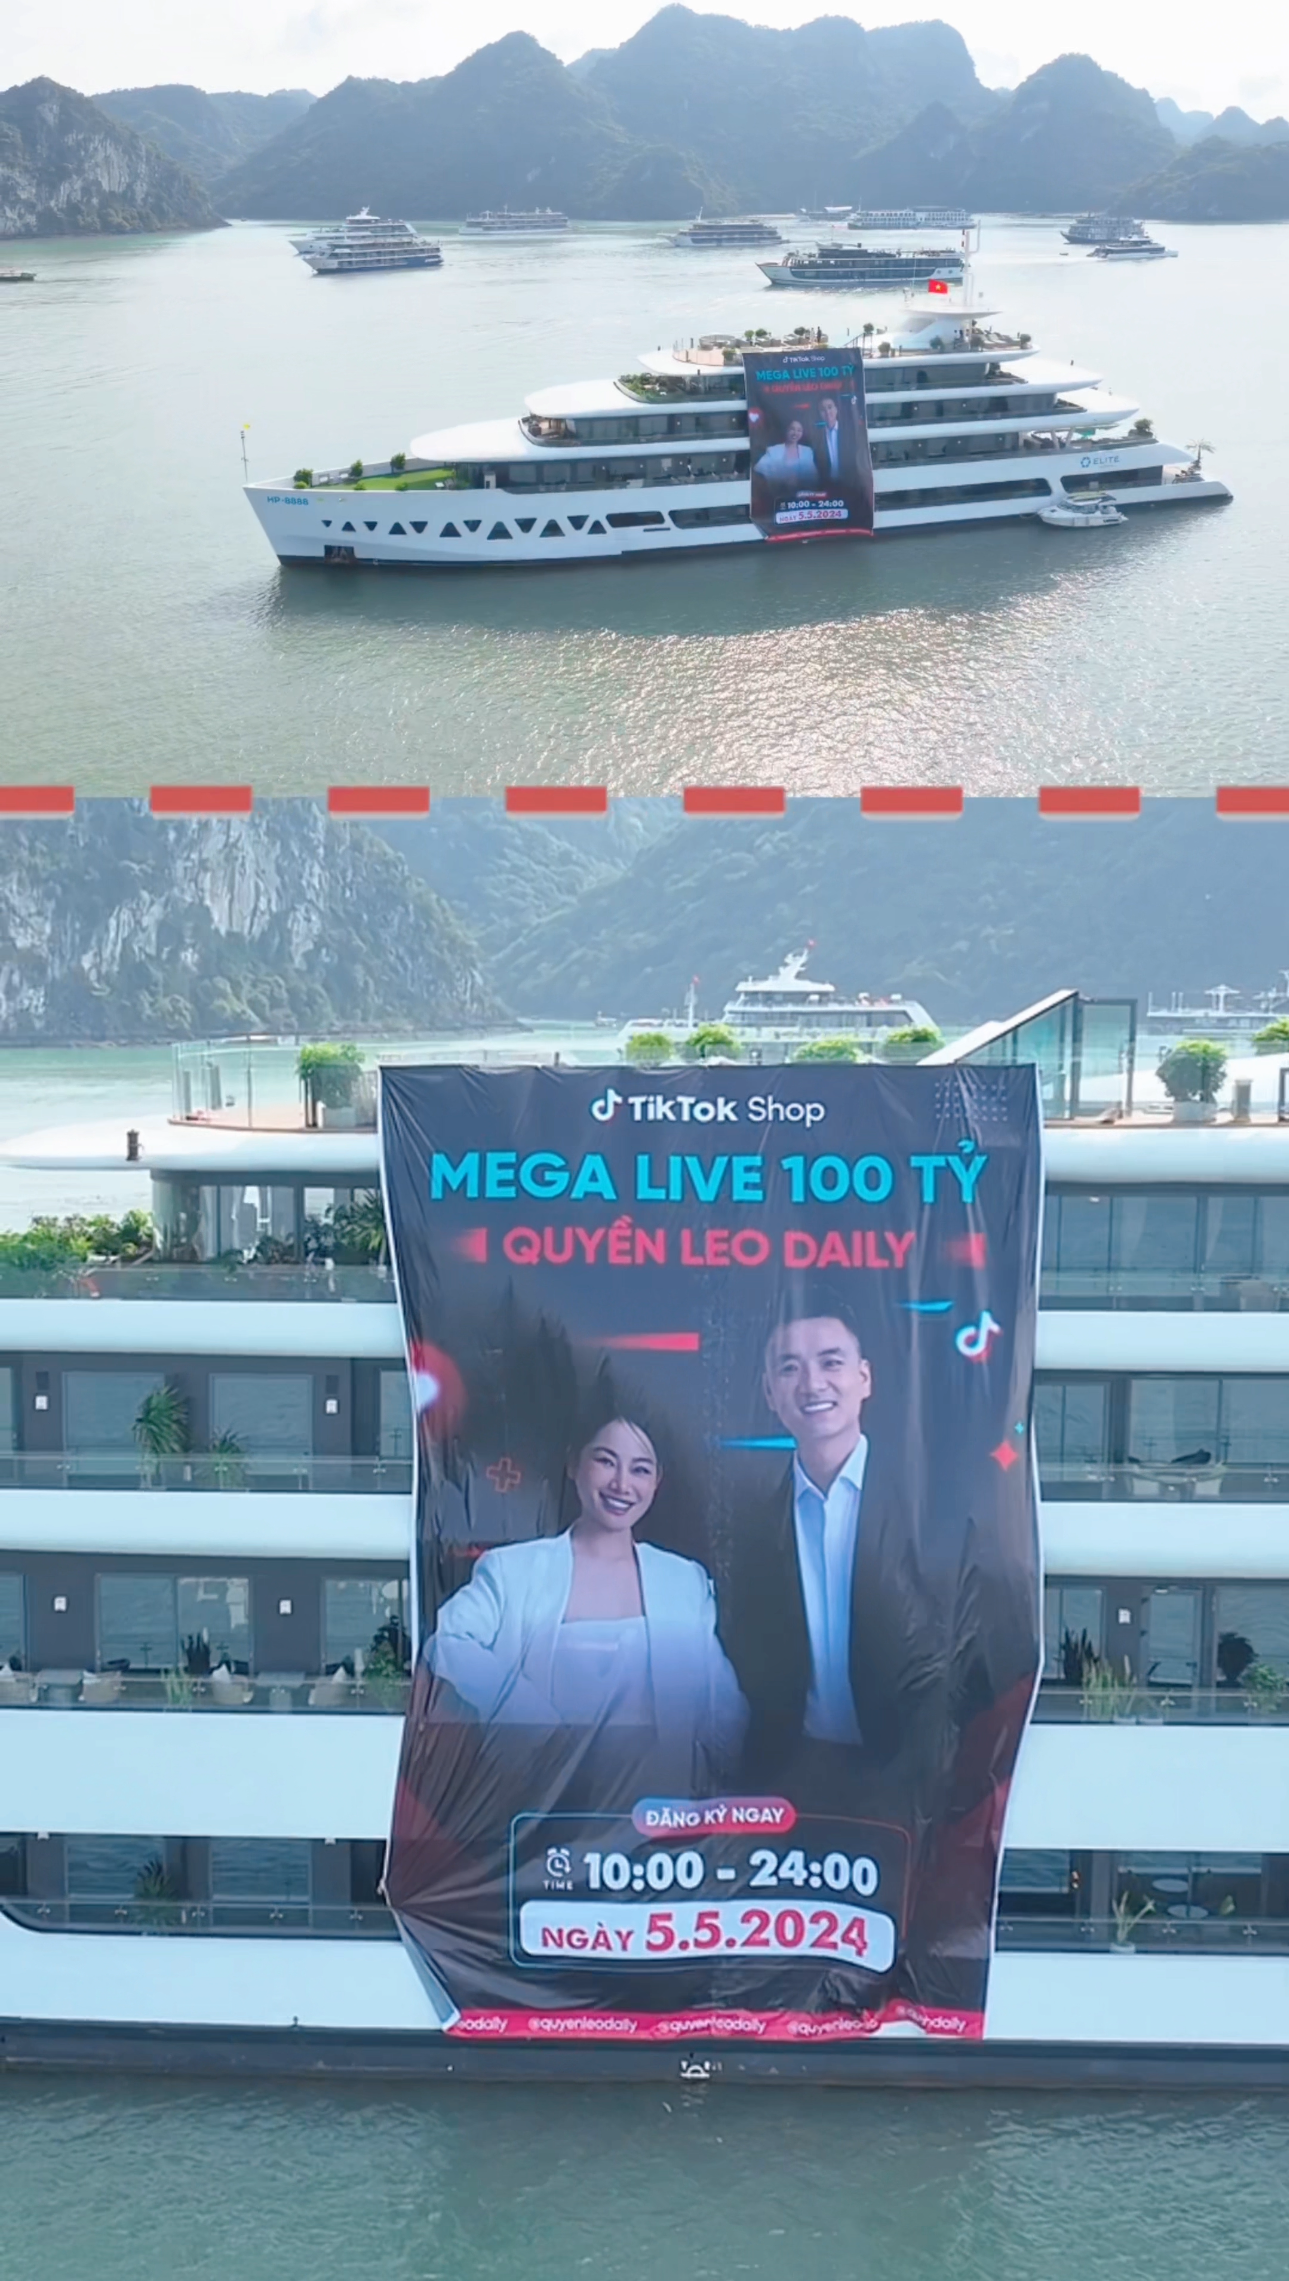 Chủ 1 kênh TikTok công bố phiên livestream phá vỡ kỷ lục Đông Nam Á: Nhận tài trợ 1 triệu đô, doanh thu kỳ vọng đạt 100 tỷ đồng, thuê hẳn du thuyền 5 sao để làm chiến dịch - Ảnh 2.